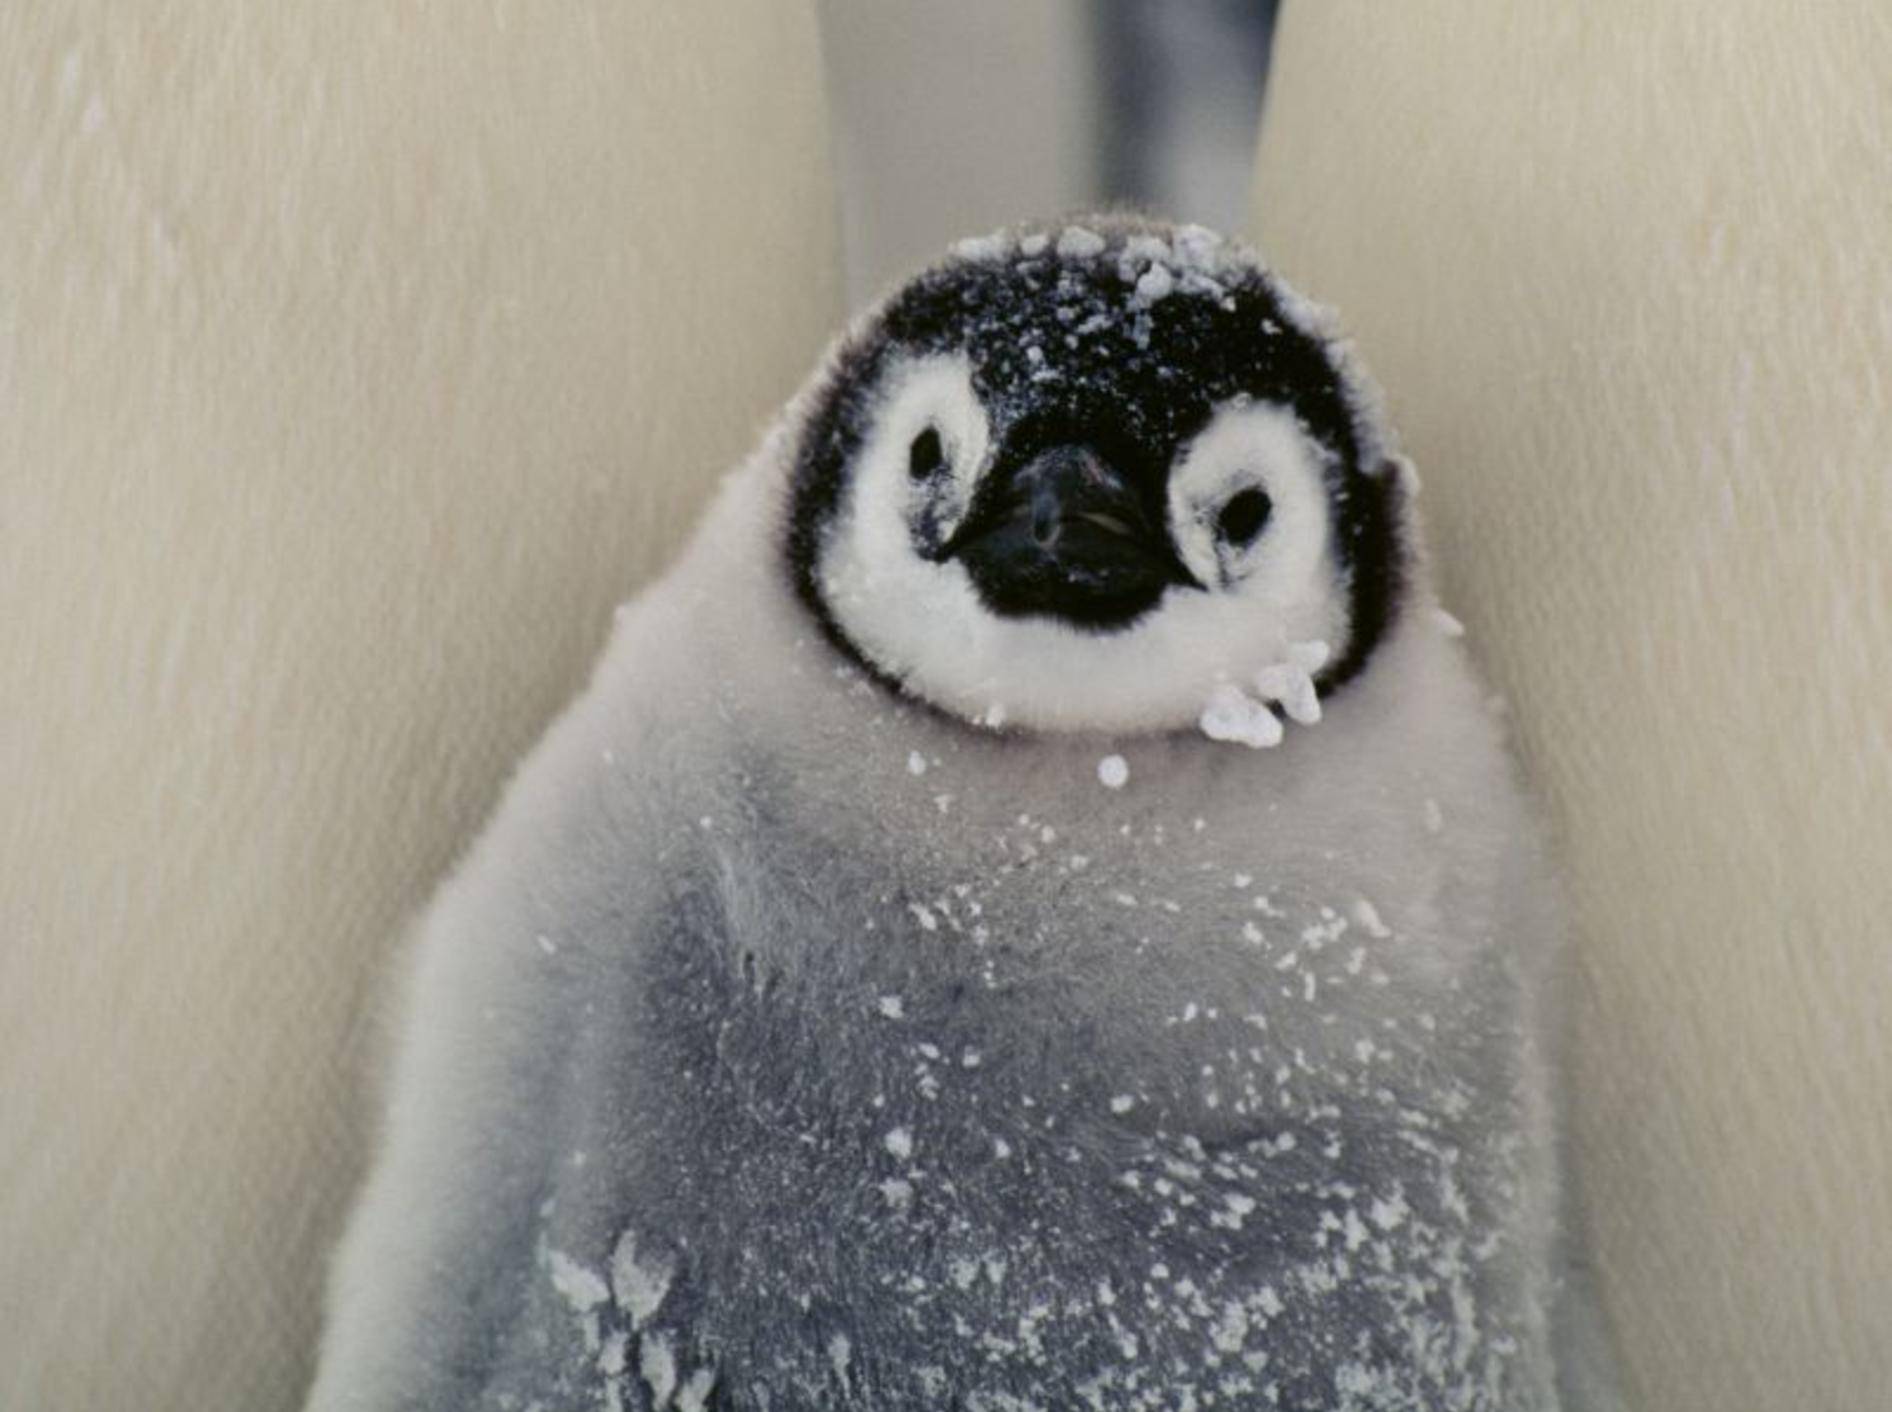 Pinguin ganz klein: Süß und flauschig — Bild: Shutterstock / BMJ